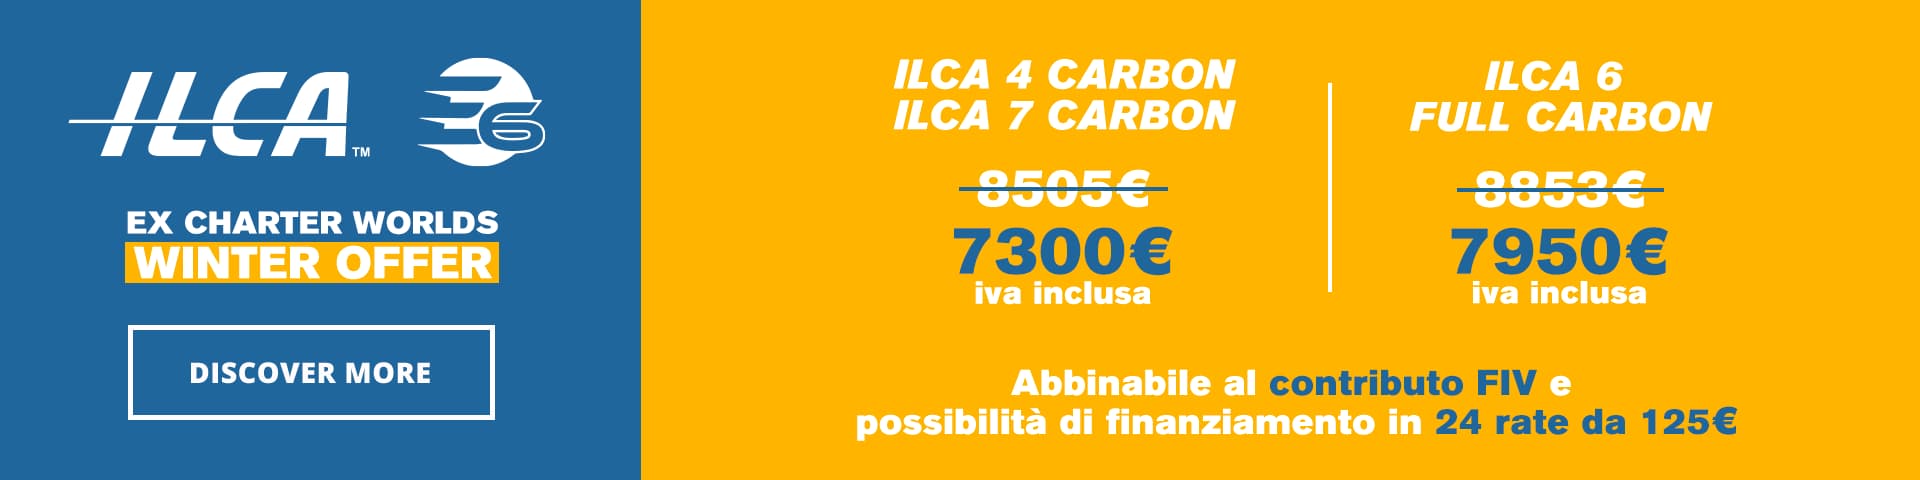 Offer ILCA E6 Negrinautica